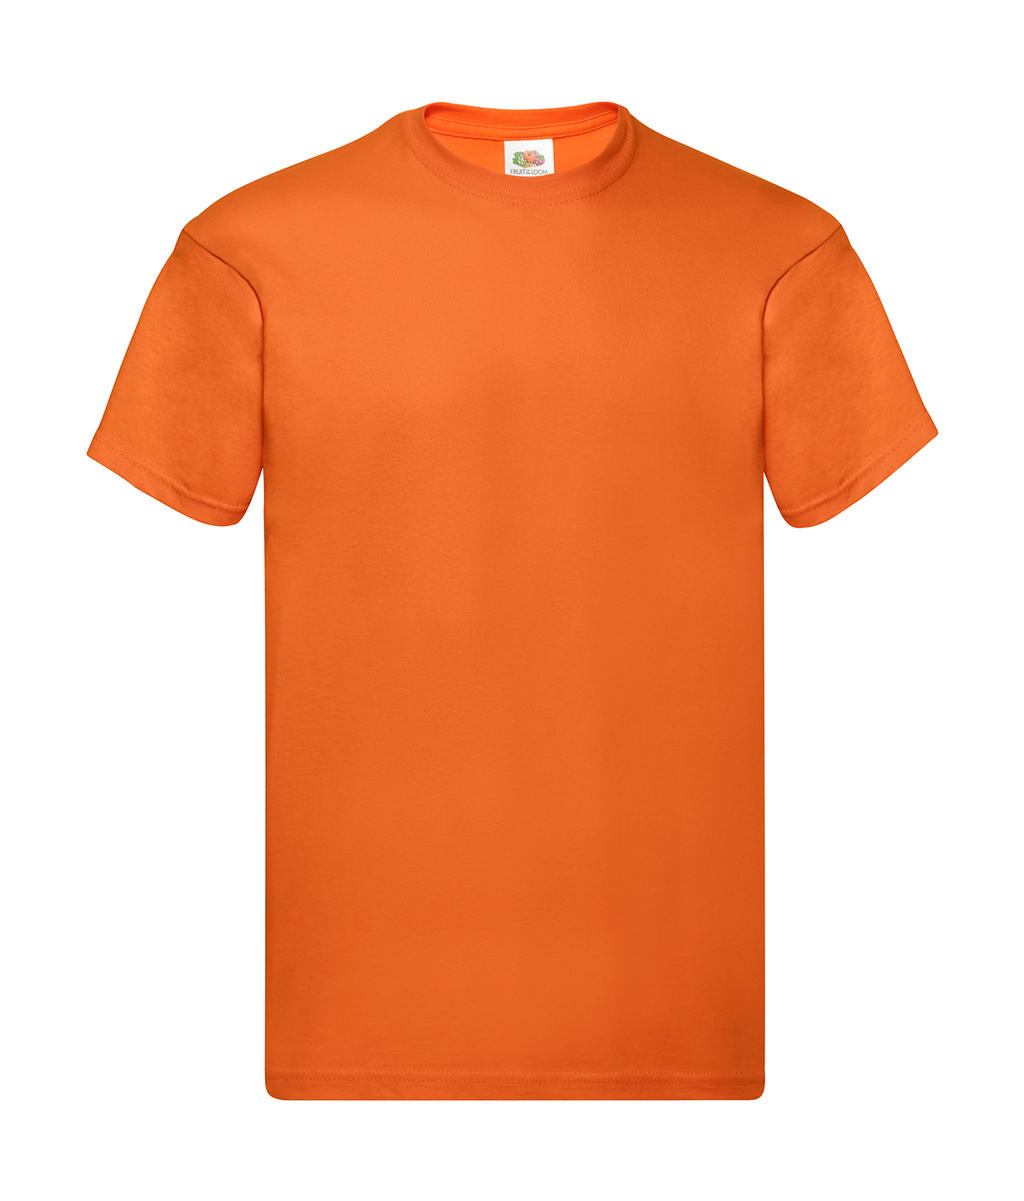 Tričko Original T - orange